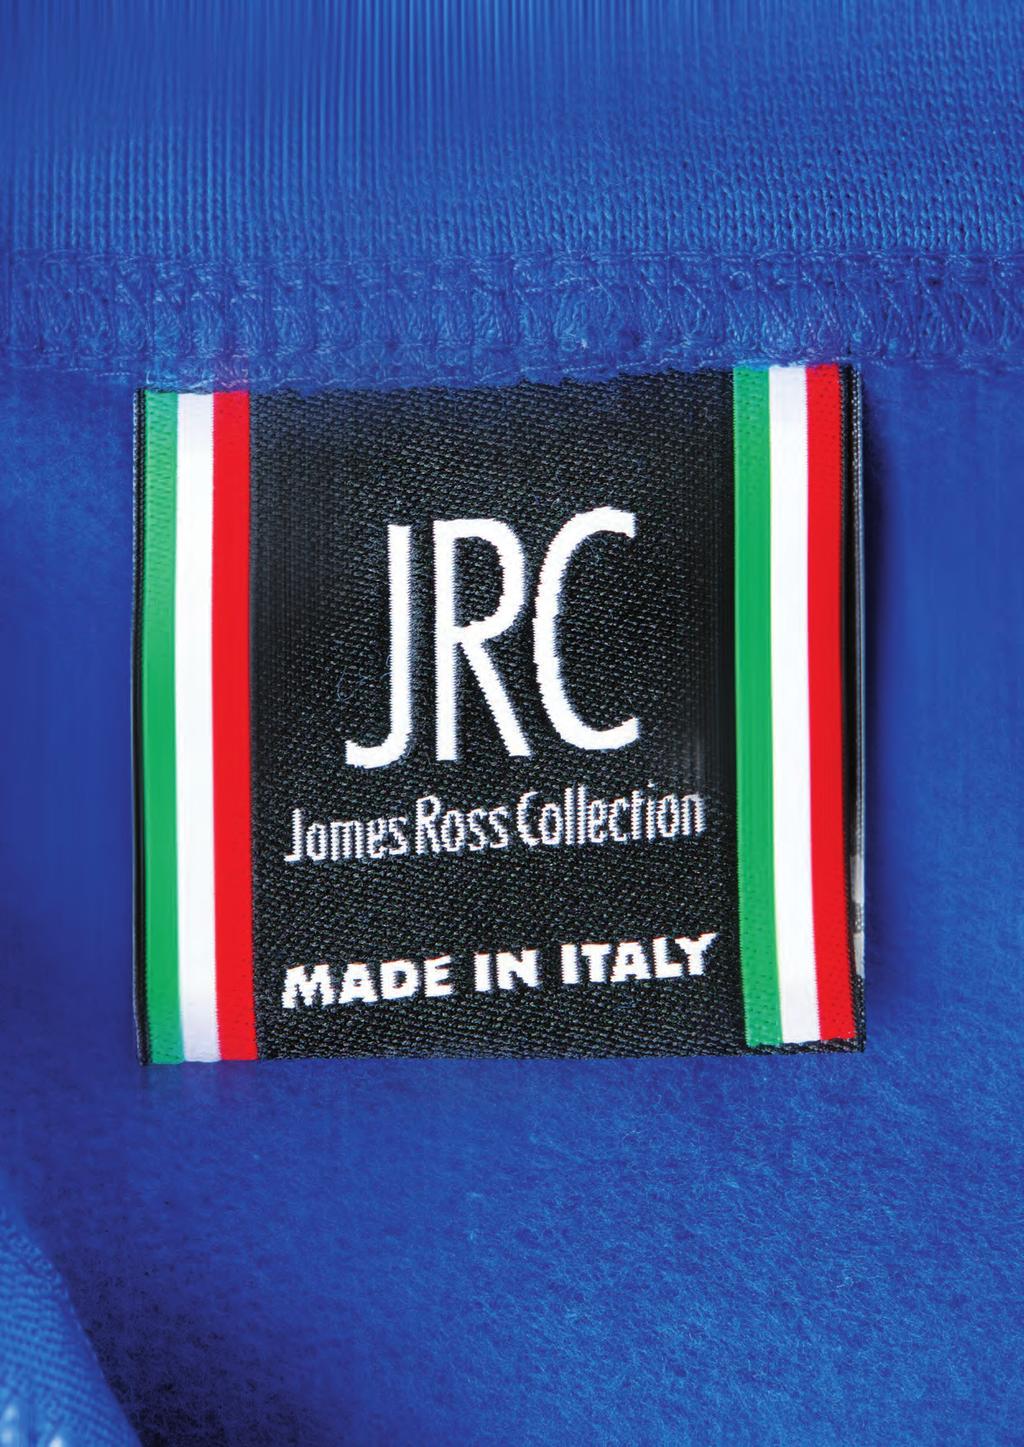 Creatività, stile, originalità, eleganza qualità, italianità Ecco le caratteristiche che trovate sintetizzate nella collezione Made in Italy.